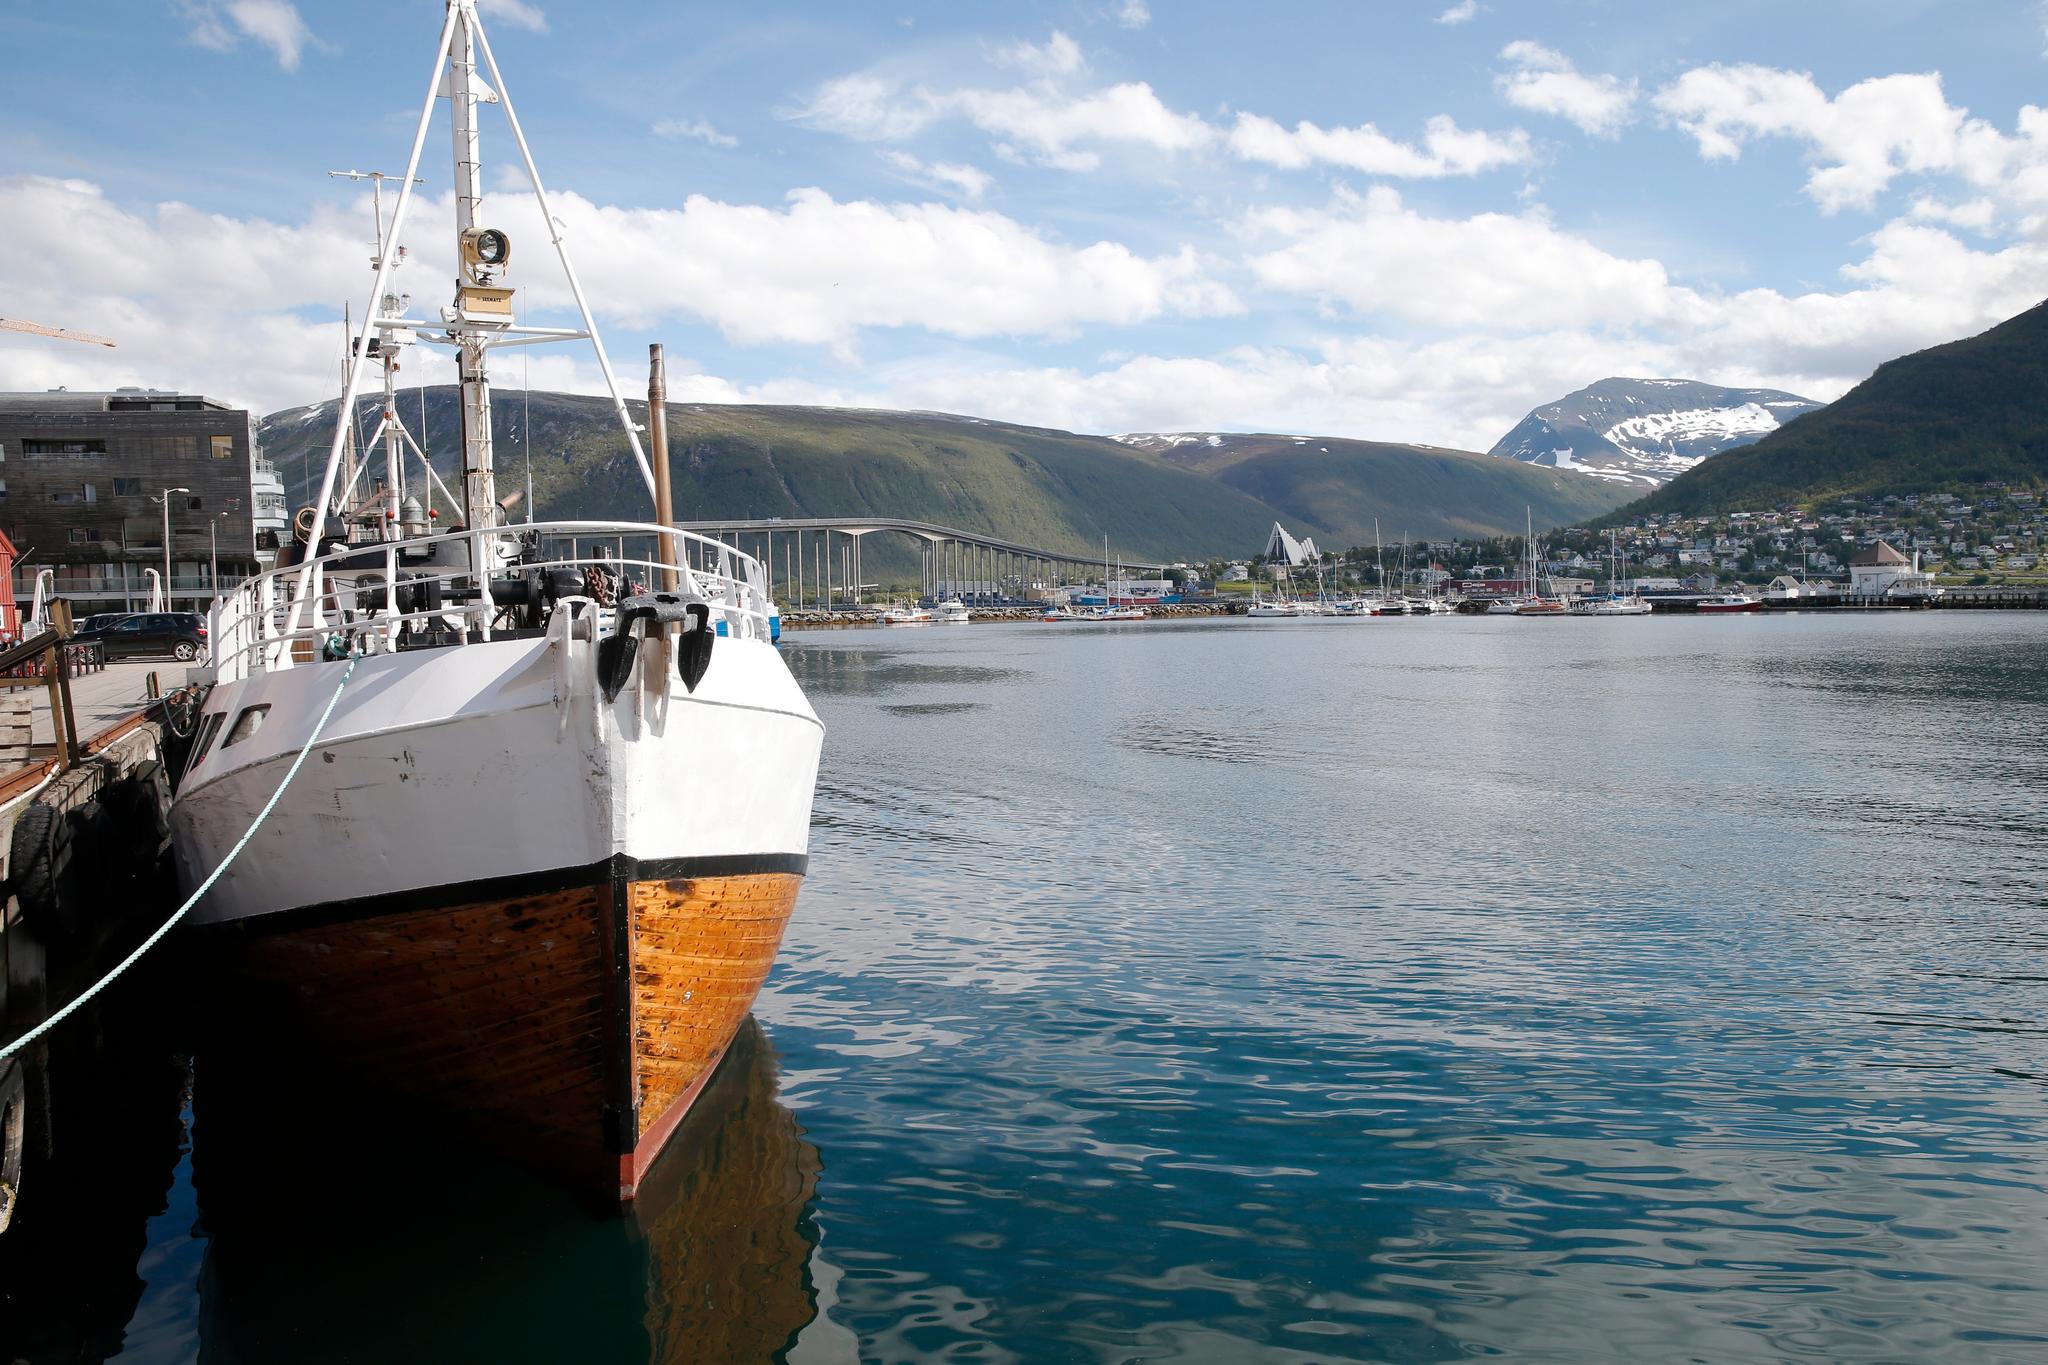   Tromsø, den desidert største byen i det nye fylket, blir trolig fylkeshovedstad. Men det er fylket selv som avgjør hvordan man organiserer arbeidet og fordeler offentlige arbeidsplasser. 